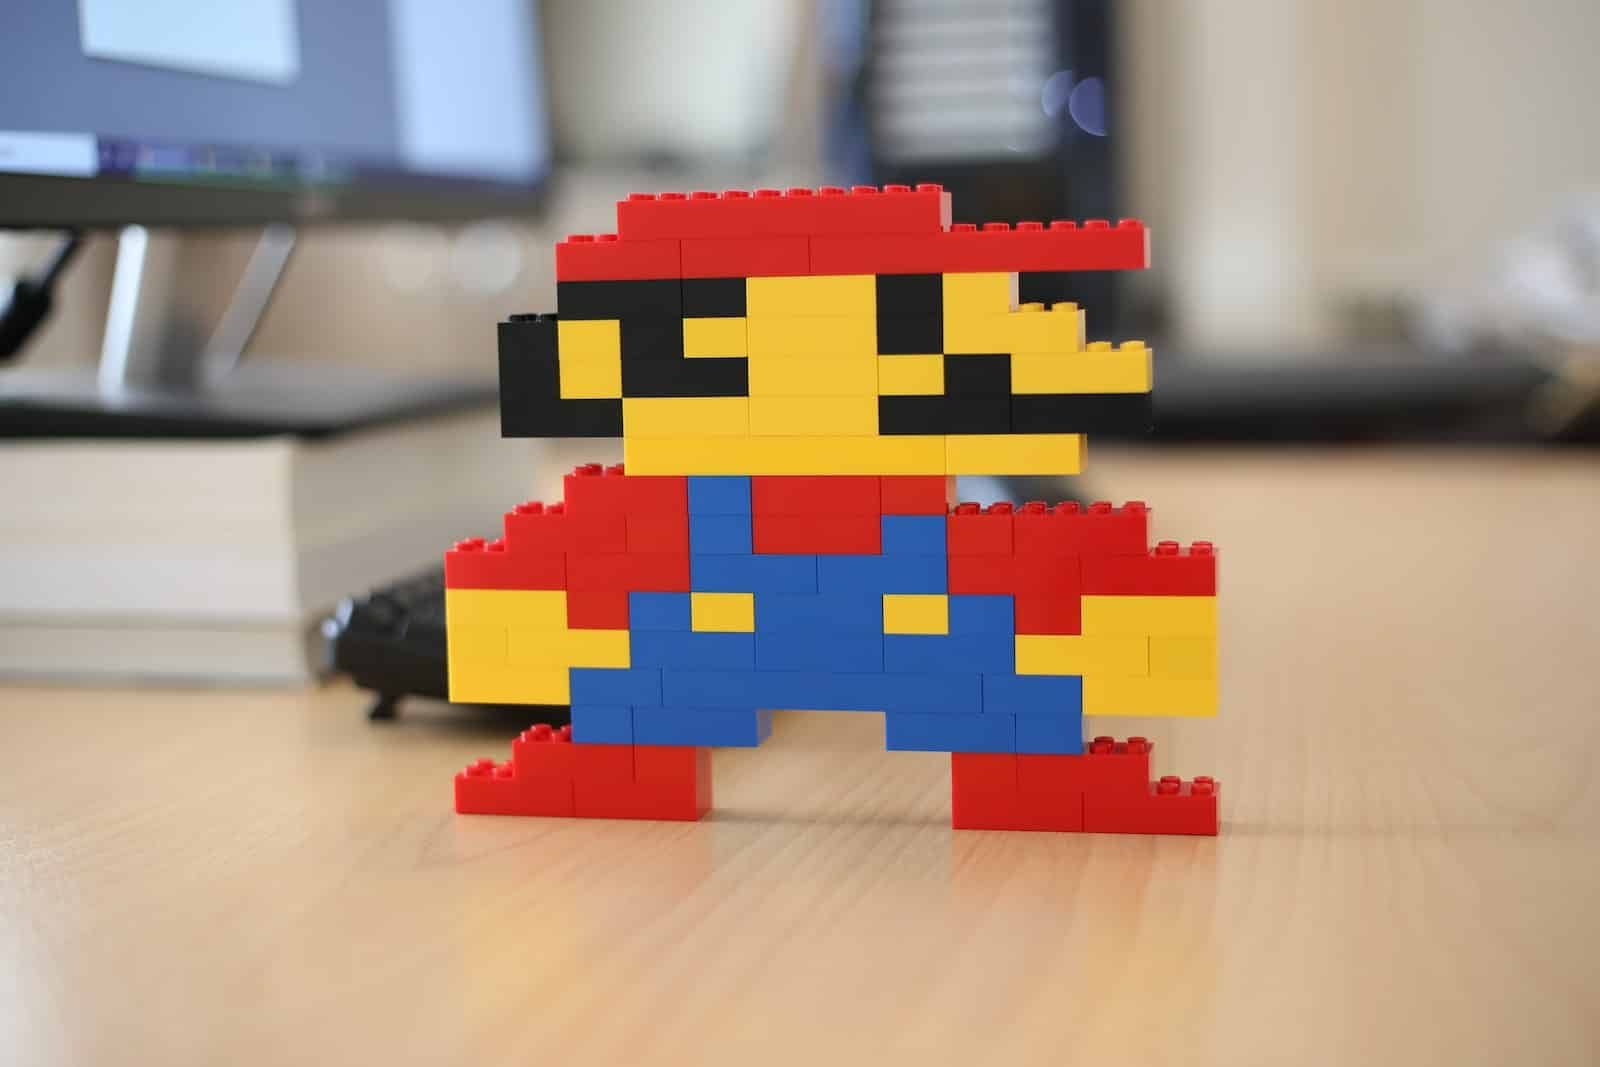 khối Lego màu vàng, đỏ và xanh